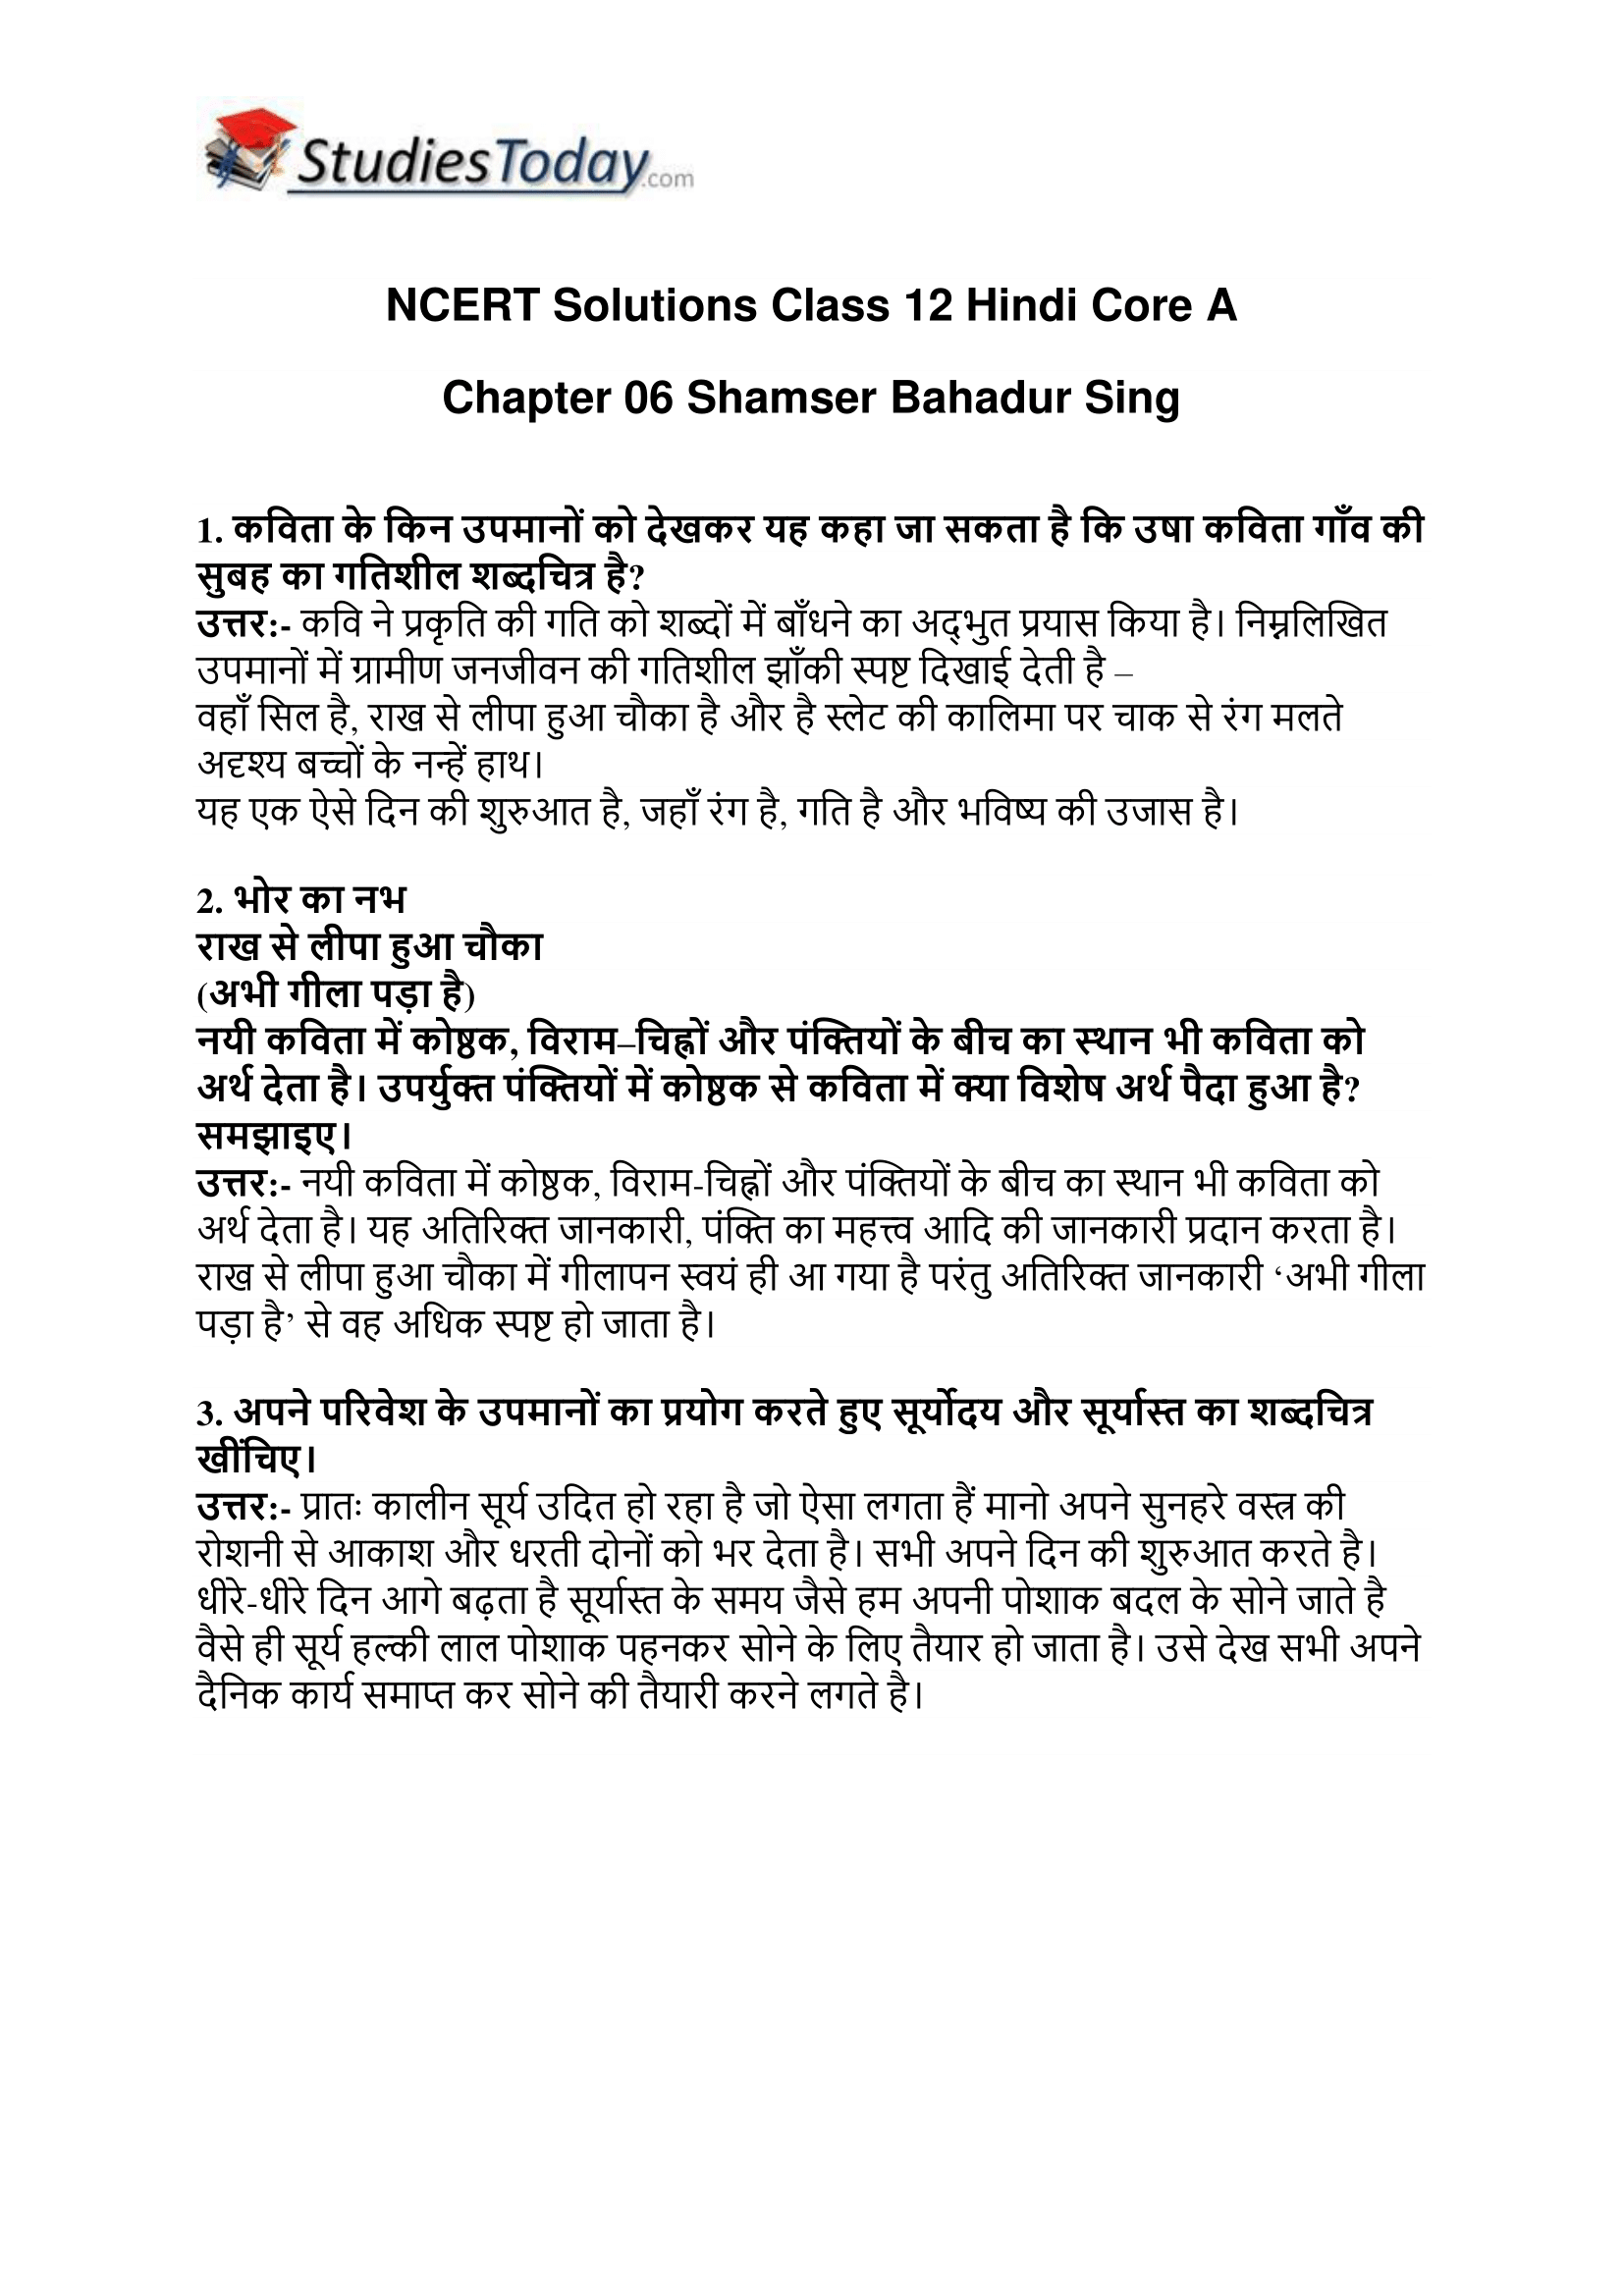 ncert-solutions-class-12-hindi-core-a-chapter-6-shamser-bahadur-sing-1